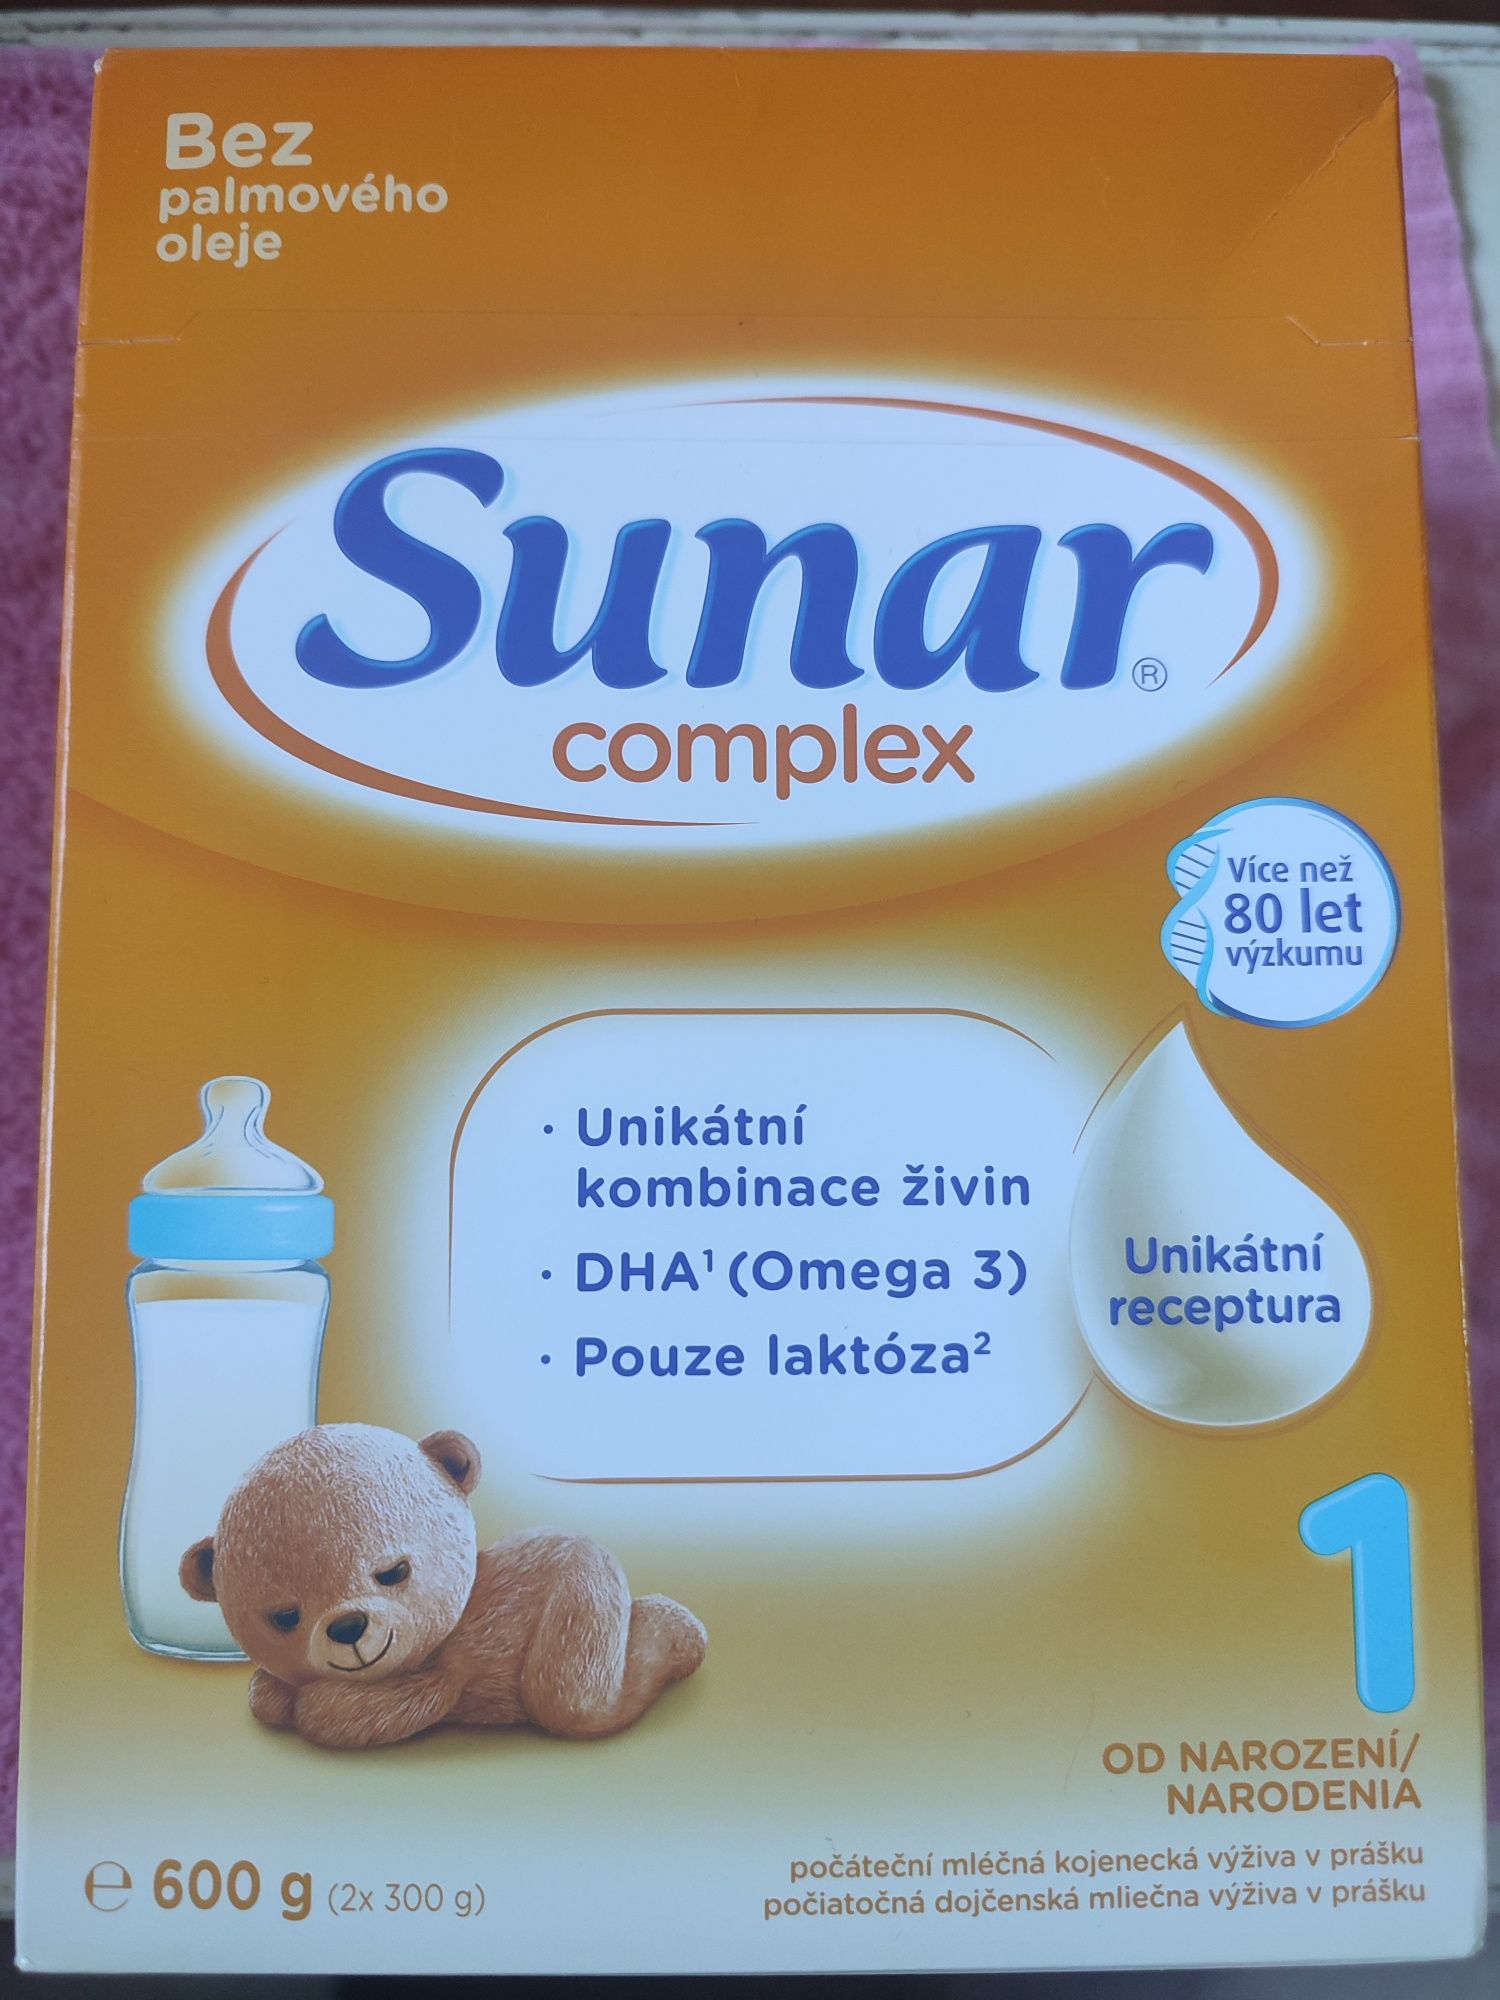 Смесь для новорожденных Sunar complex